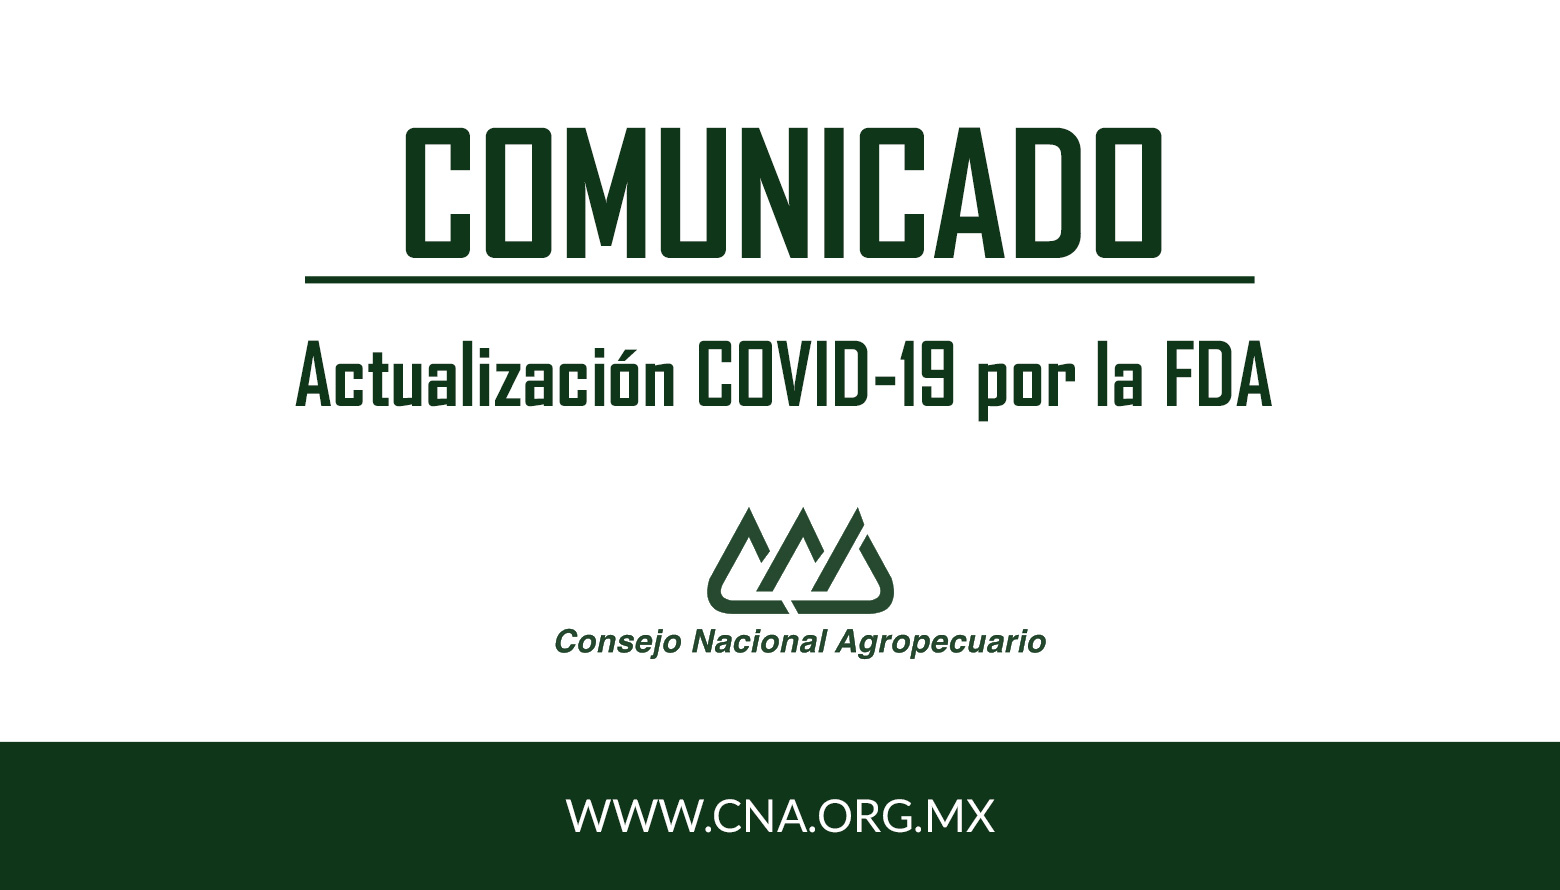 Comunicado: Actualización COVID-19 por la FDA